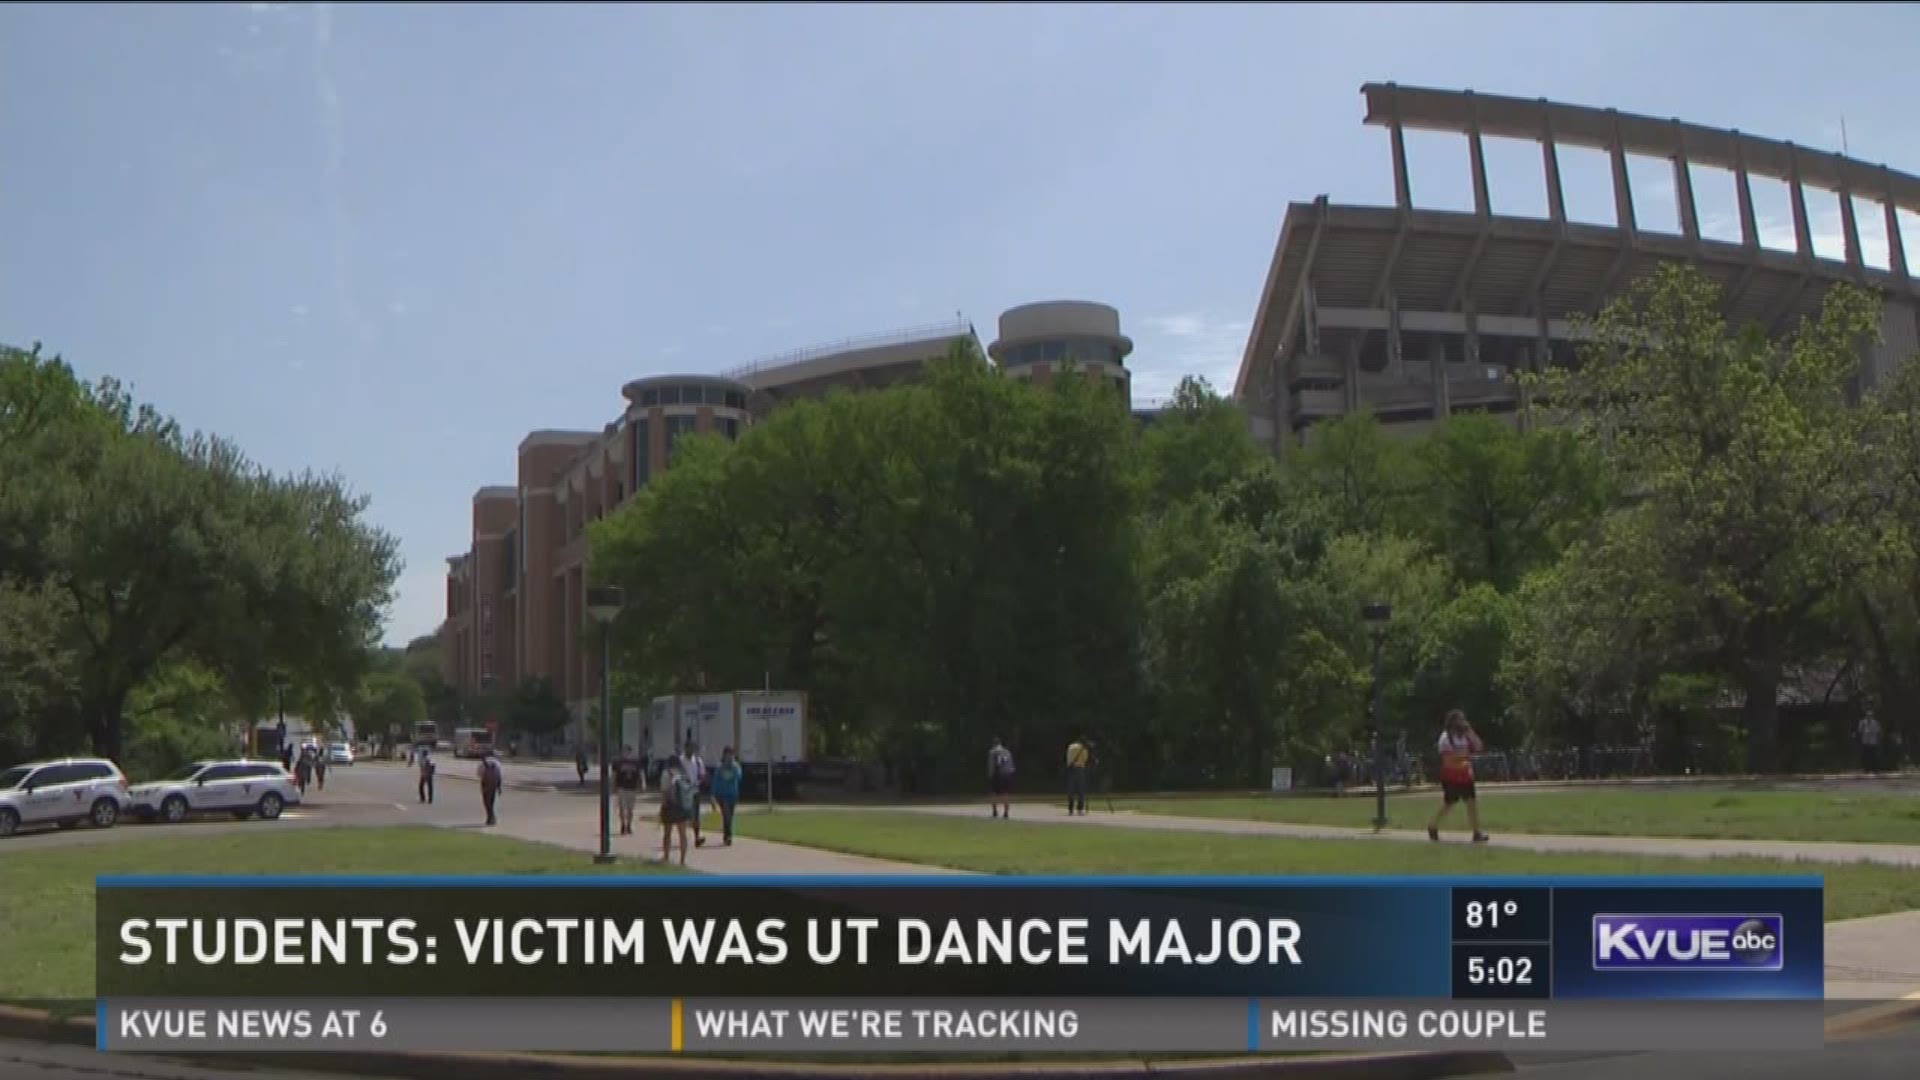 Student: Victim was UT dance major